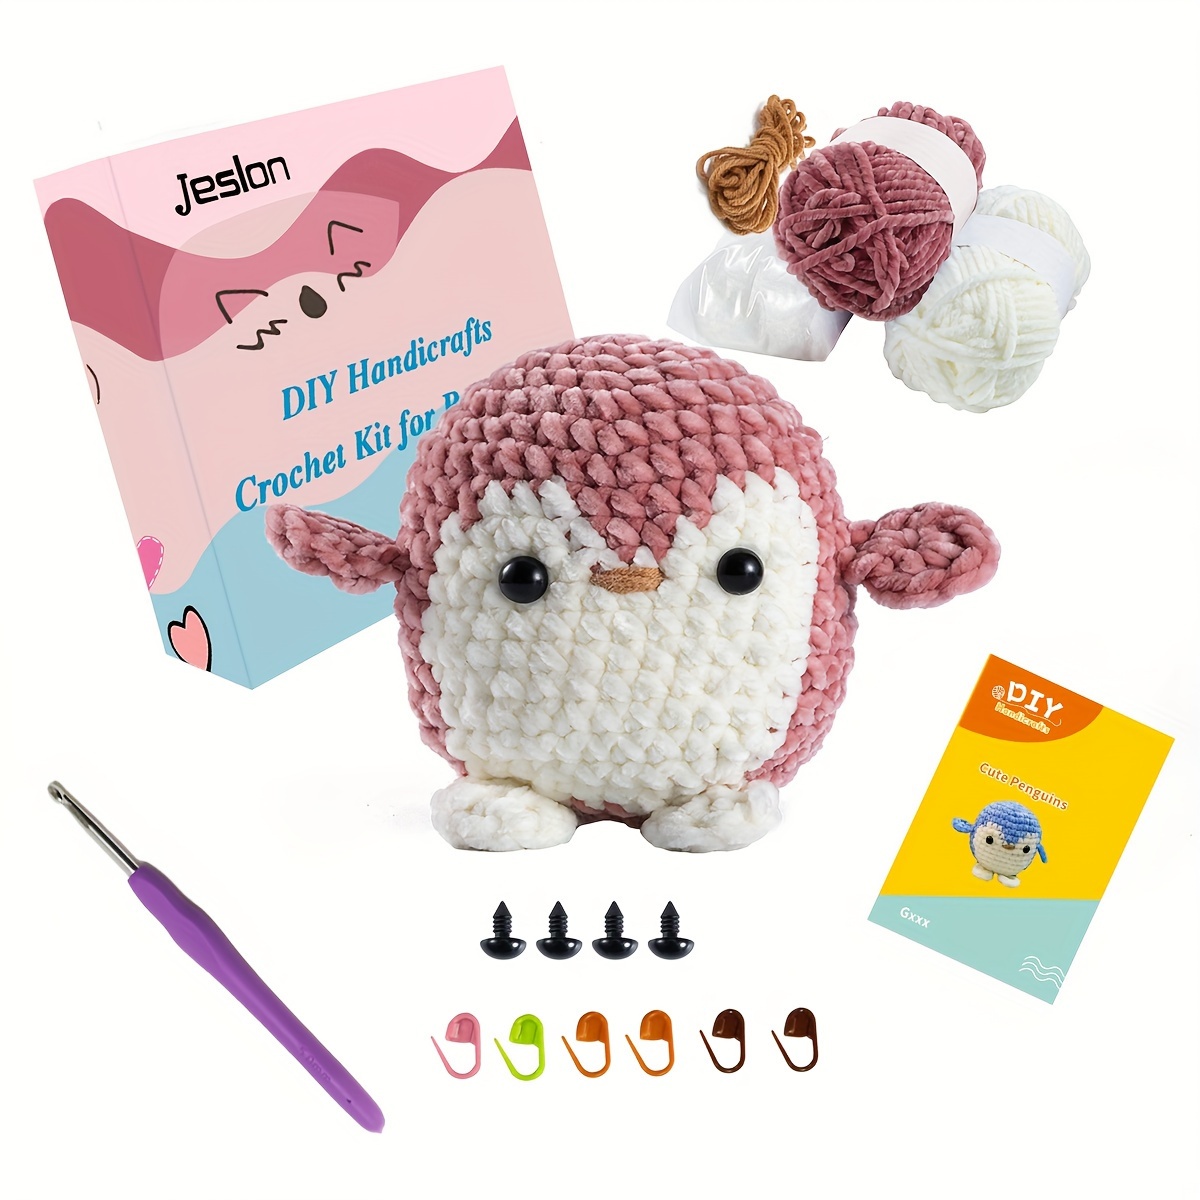 Wobbles Crochet Kit Beginner Crochet Start Kit Knitting Kit DIY Craft Art  For Adults And Beginners Crochet Animal Kit Woobles